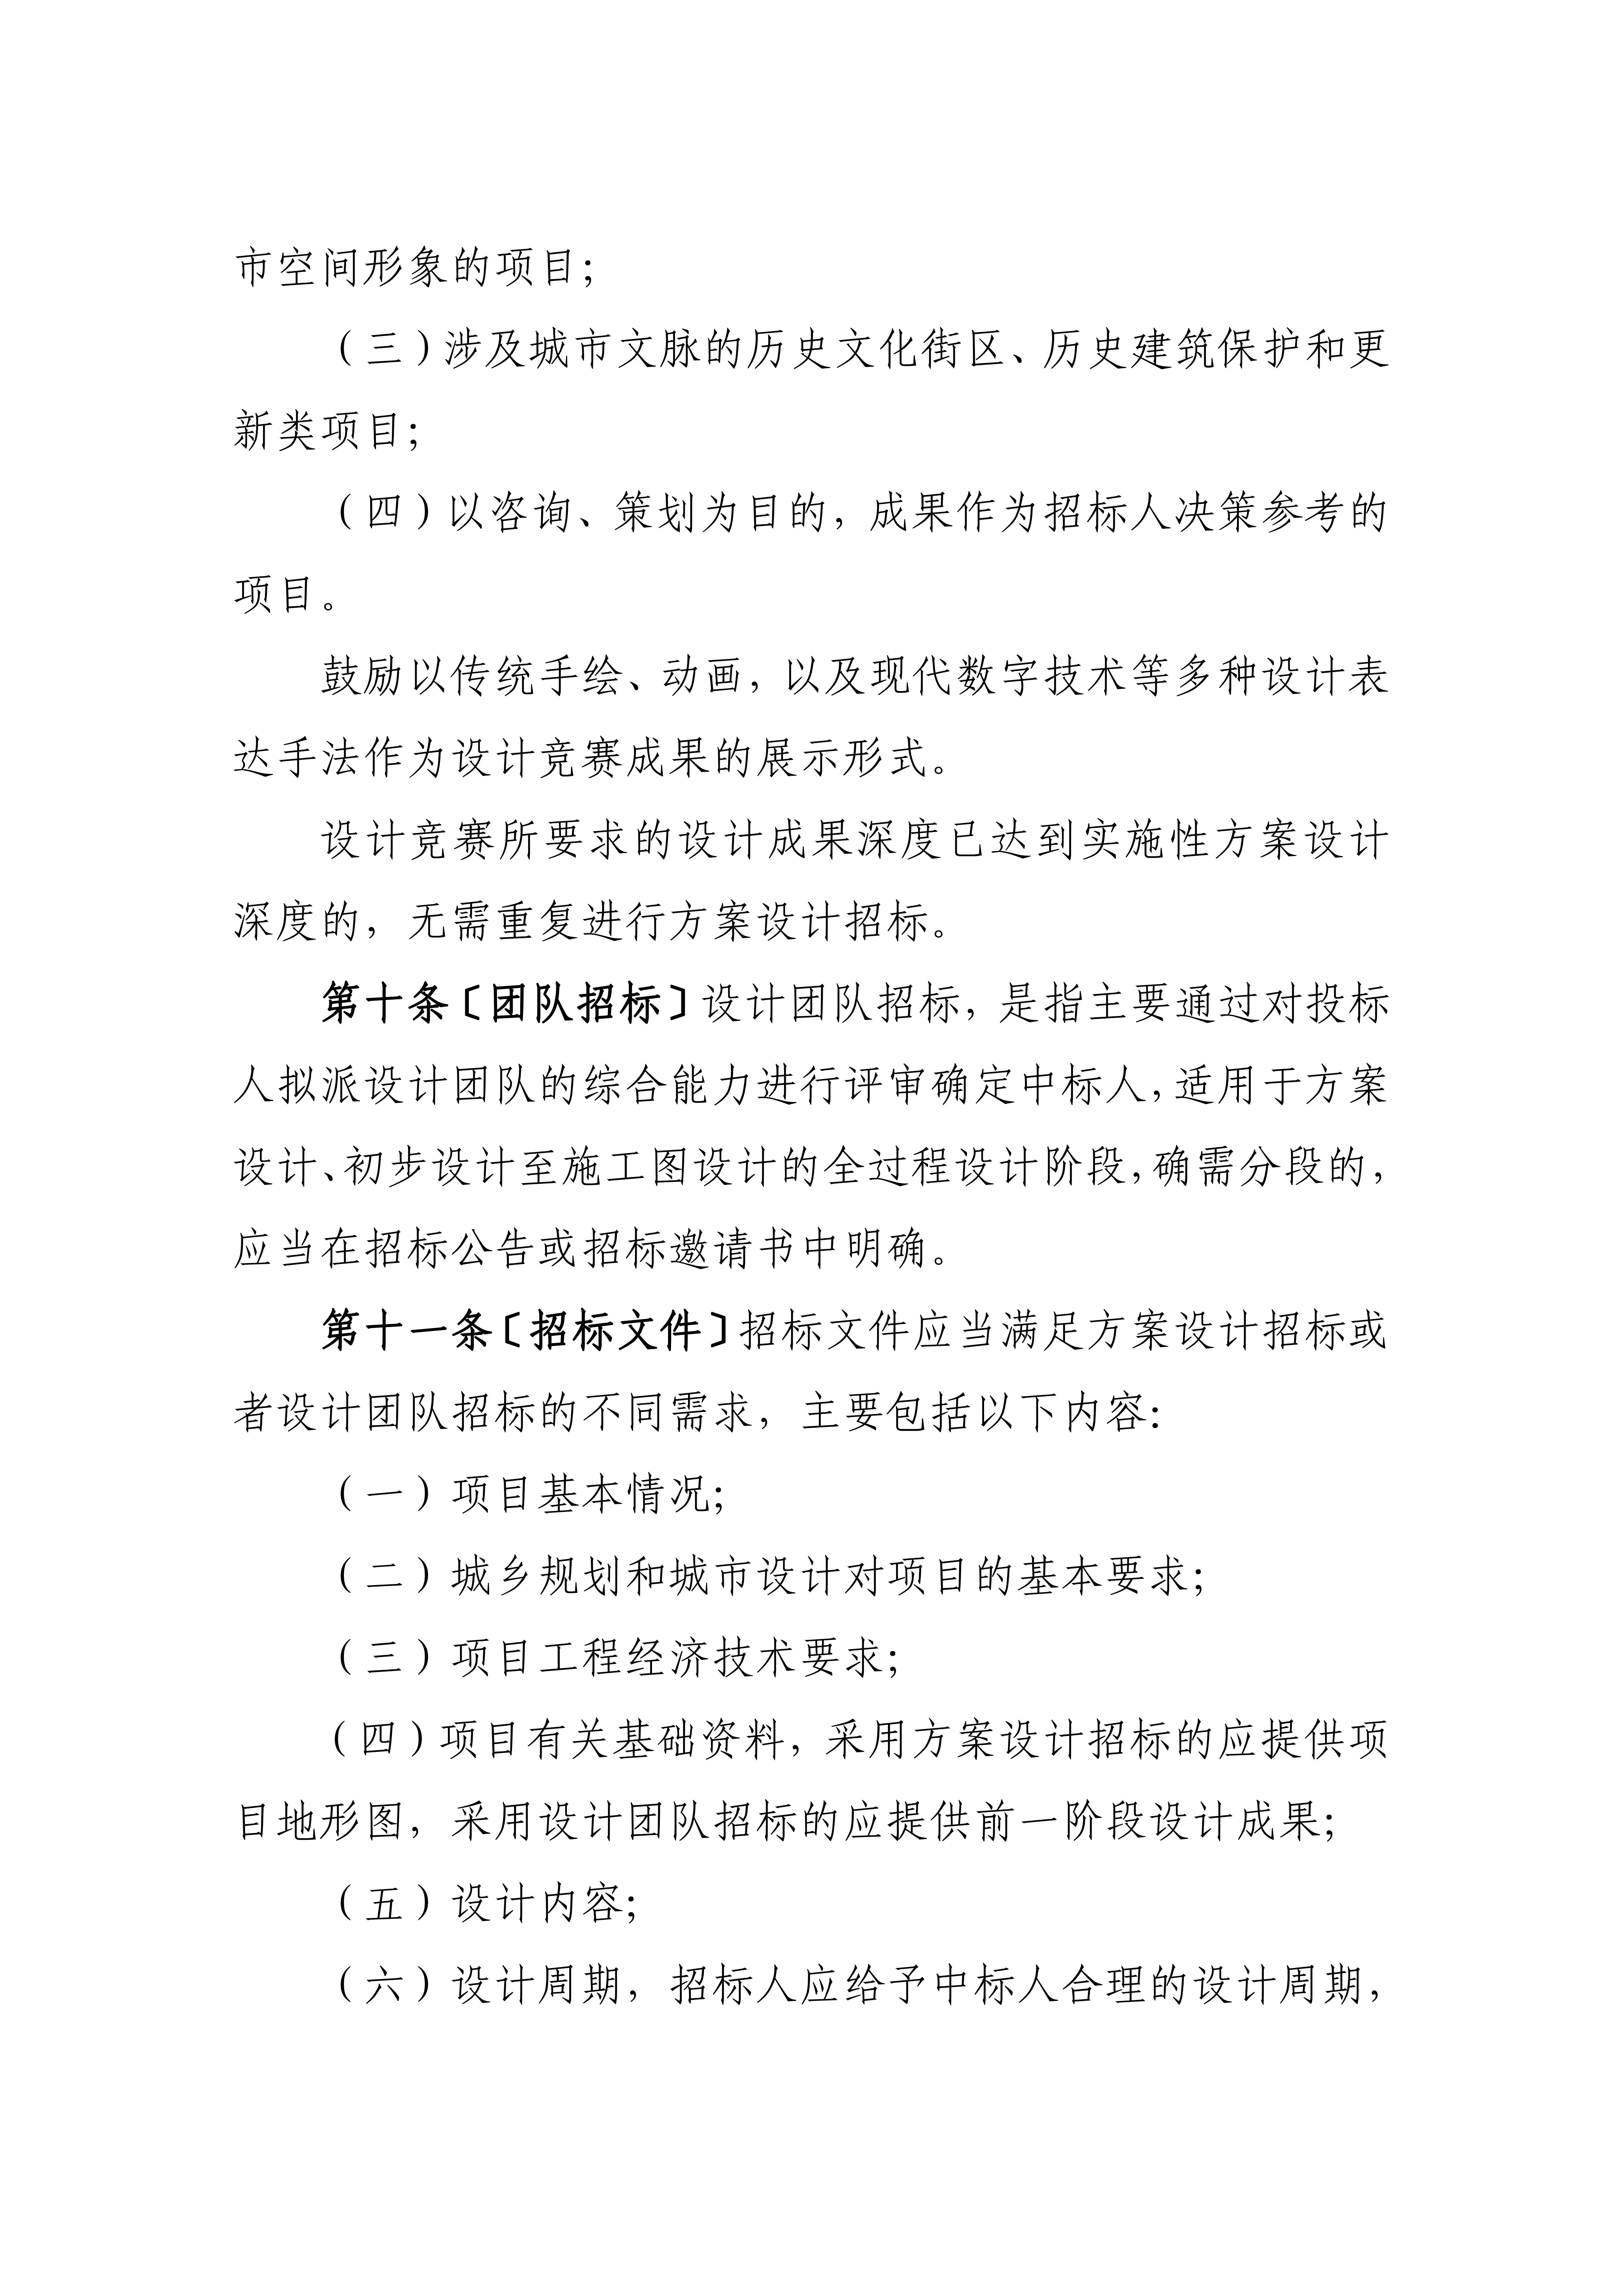 黑龙江省建筑工程设计招标投标管理实施细则（暂行）_02.jpg